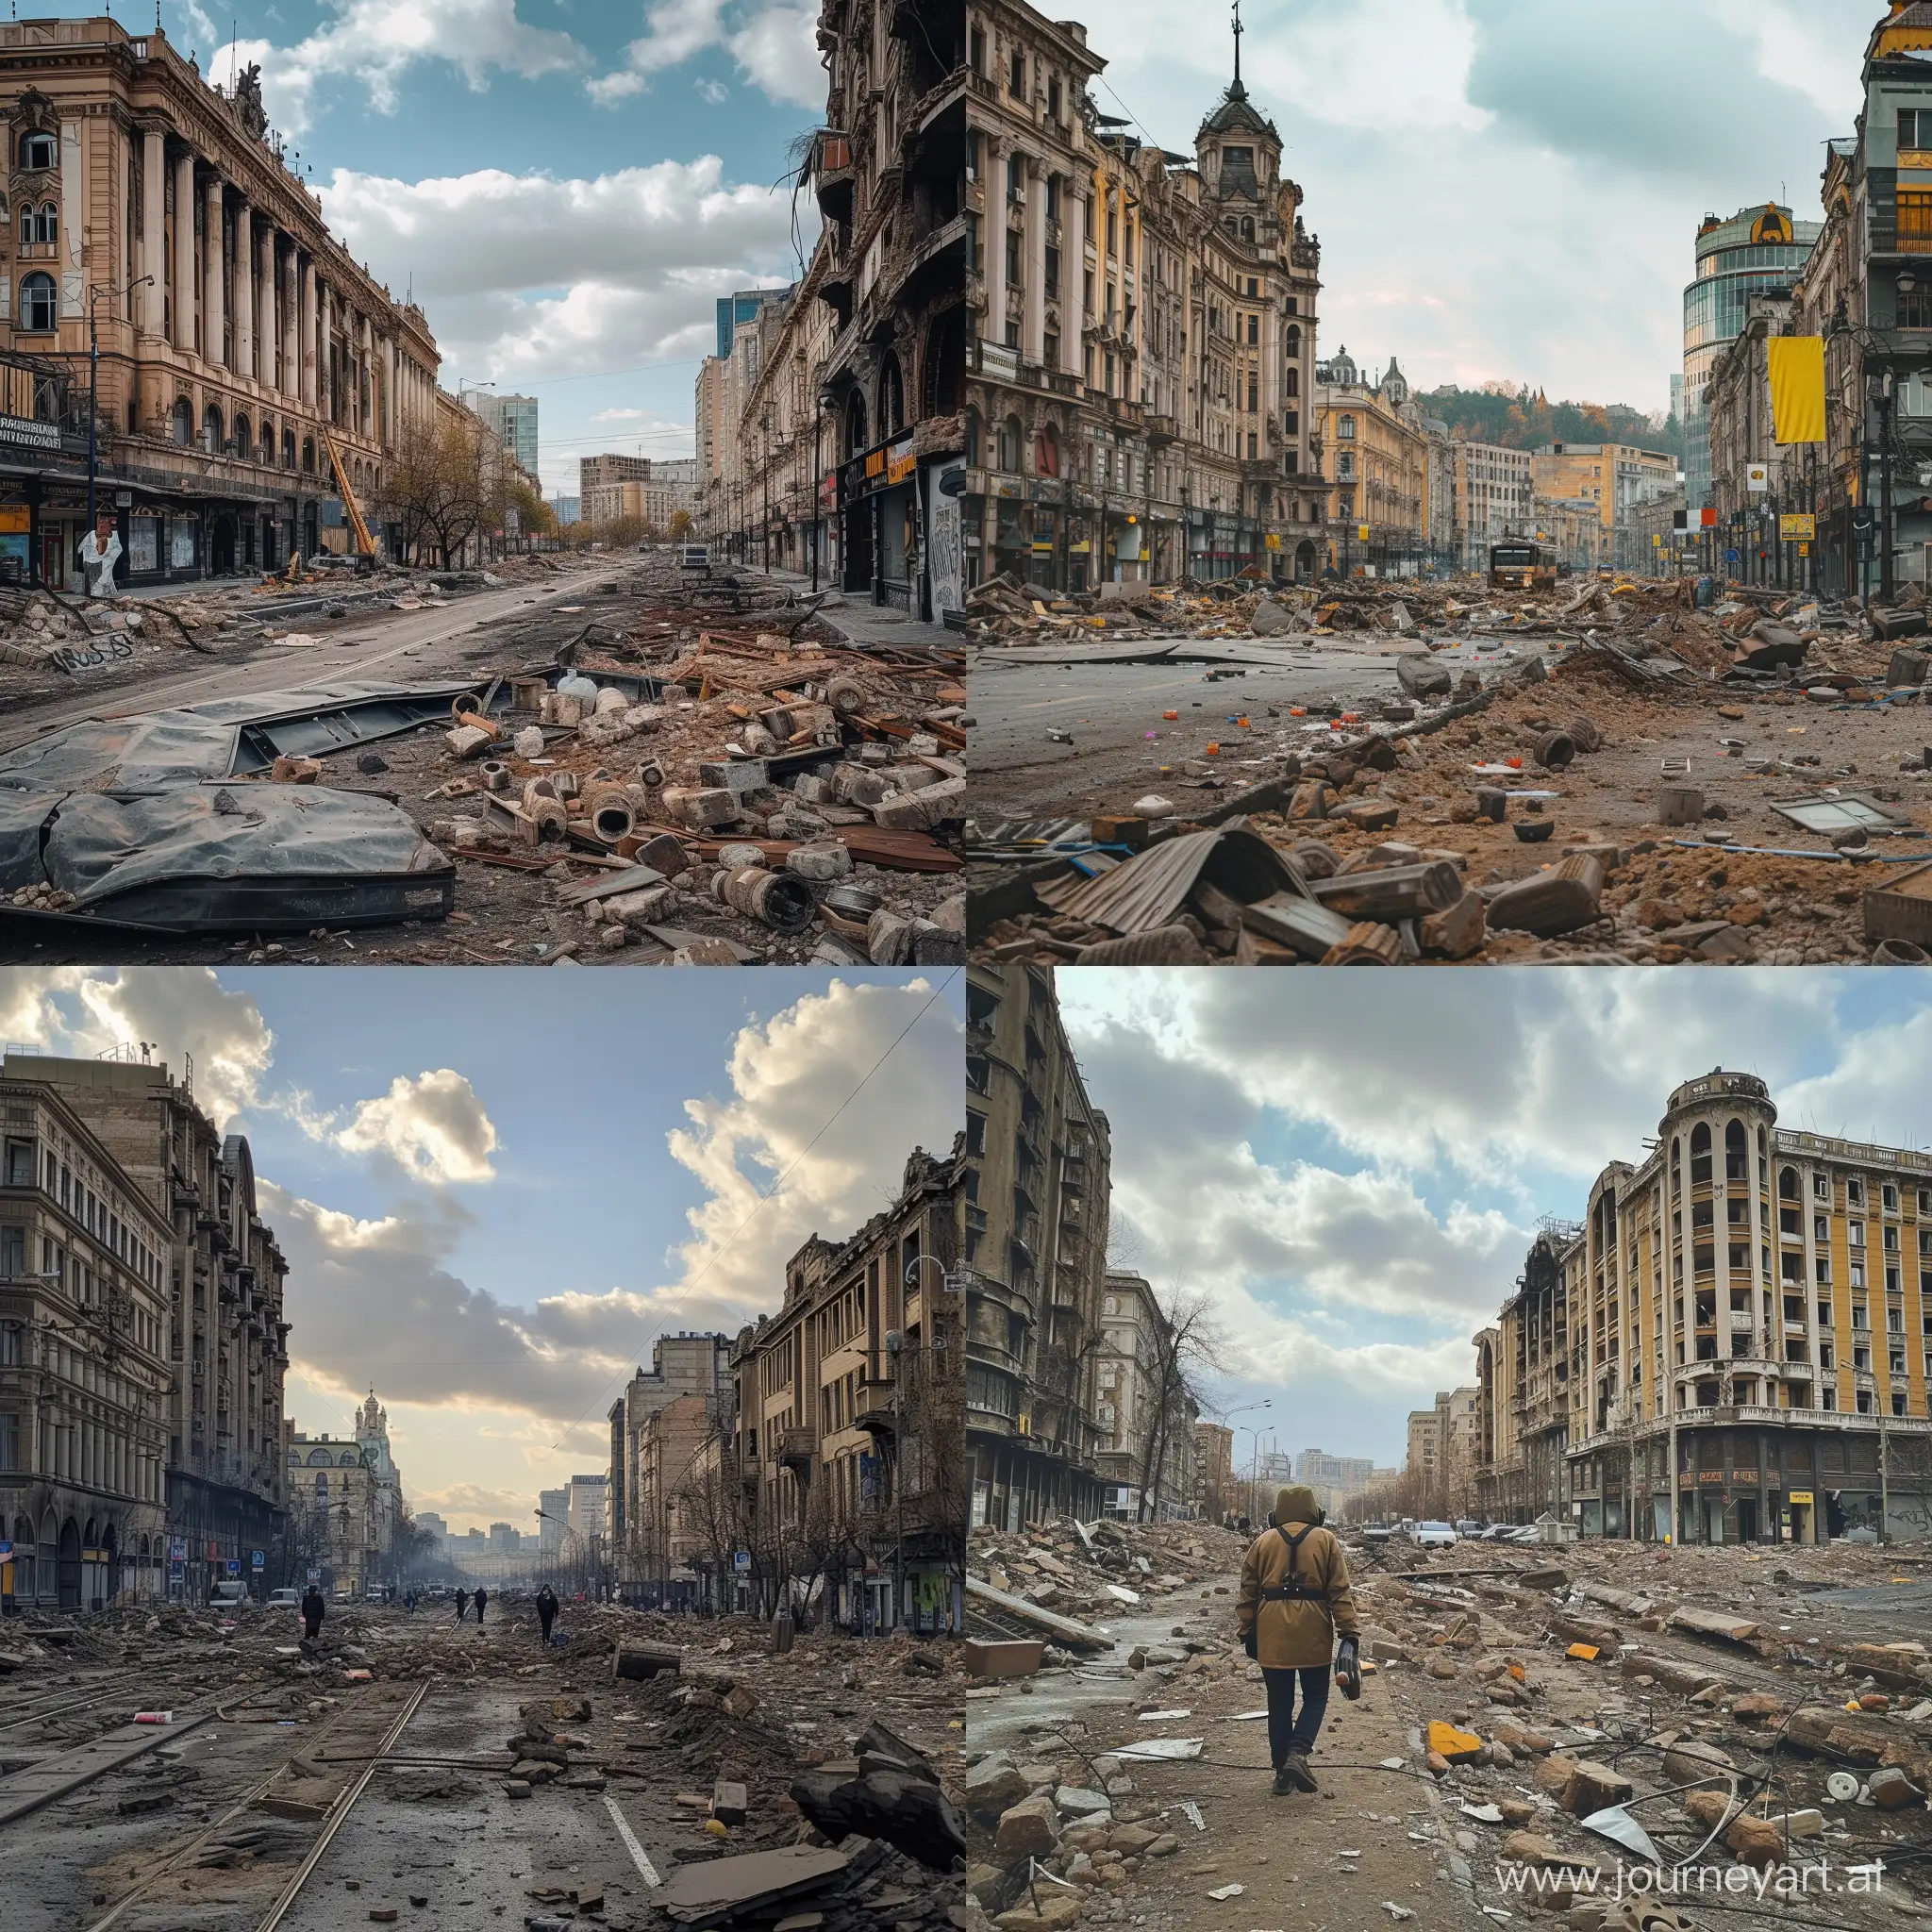 Urban-Ruins-in-Kyiv-2025-Khreshchatyk-Decay